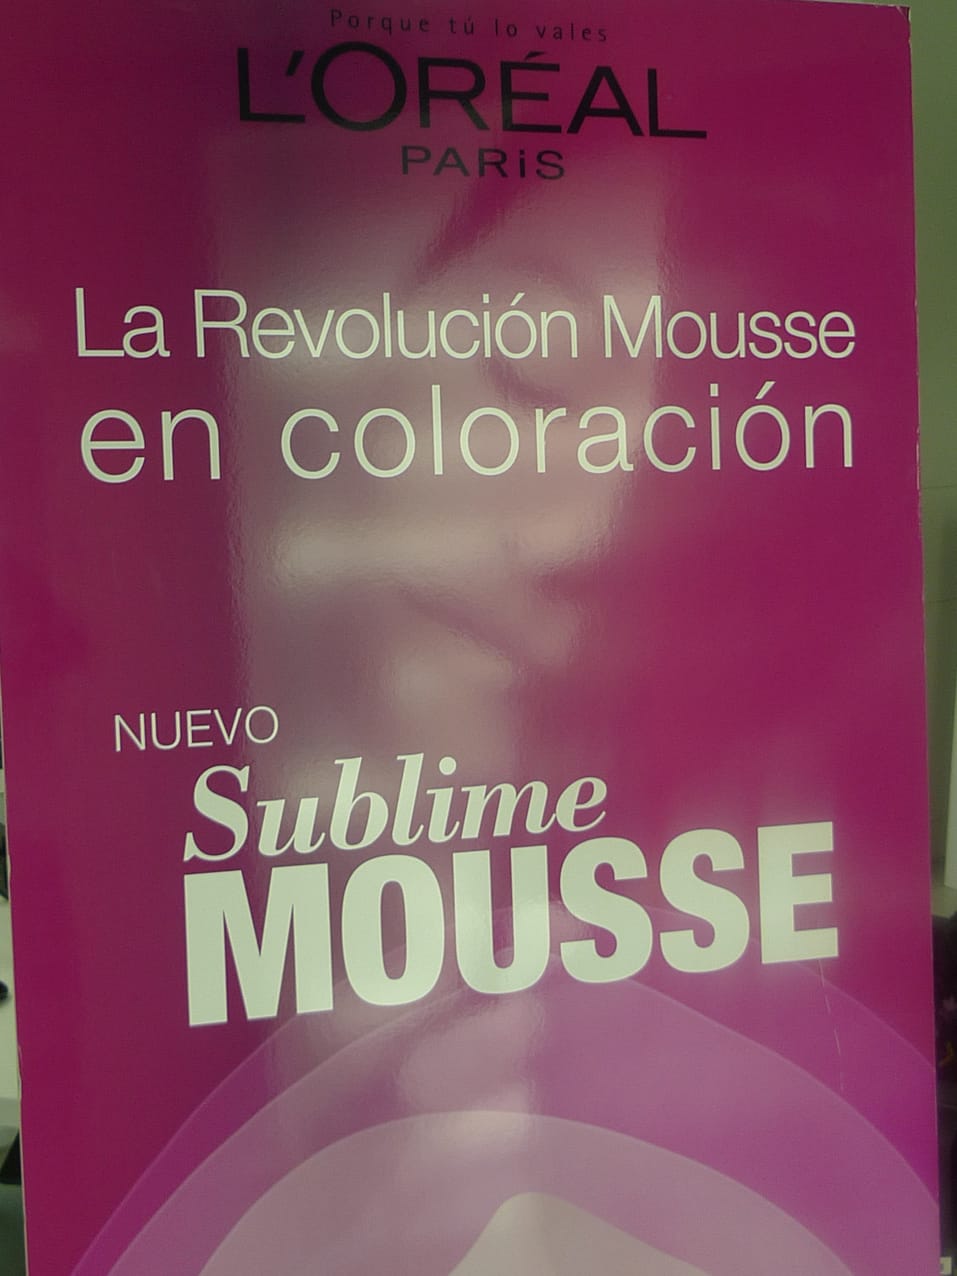 Cartel de la nueva coloración en mousse de L'Oréal Paris